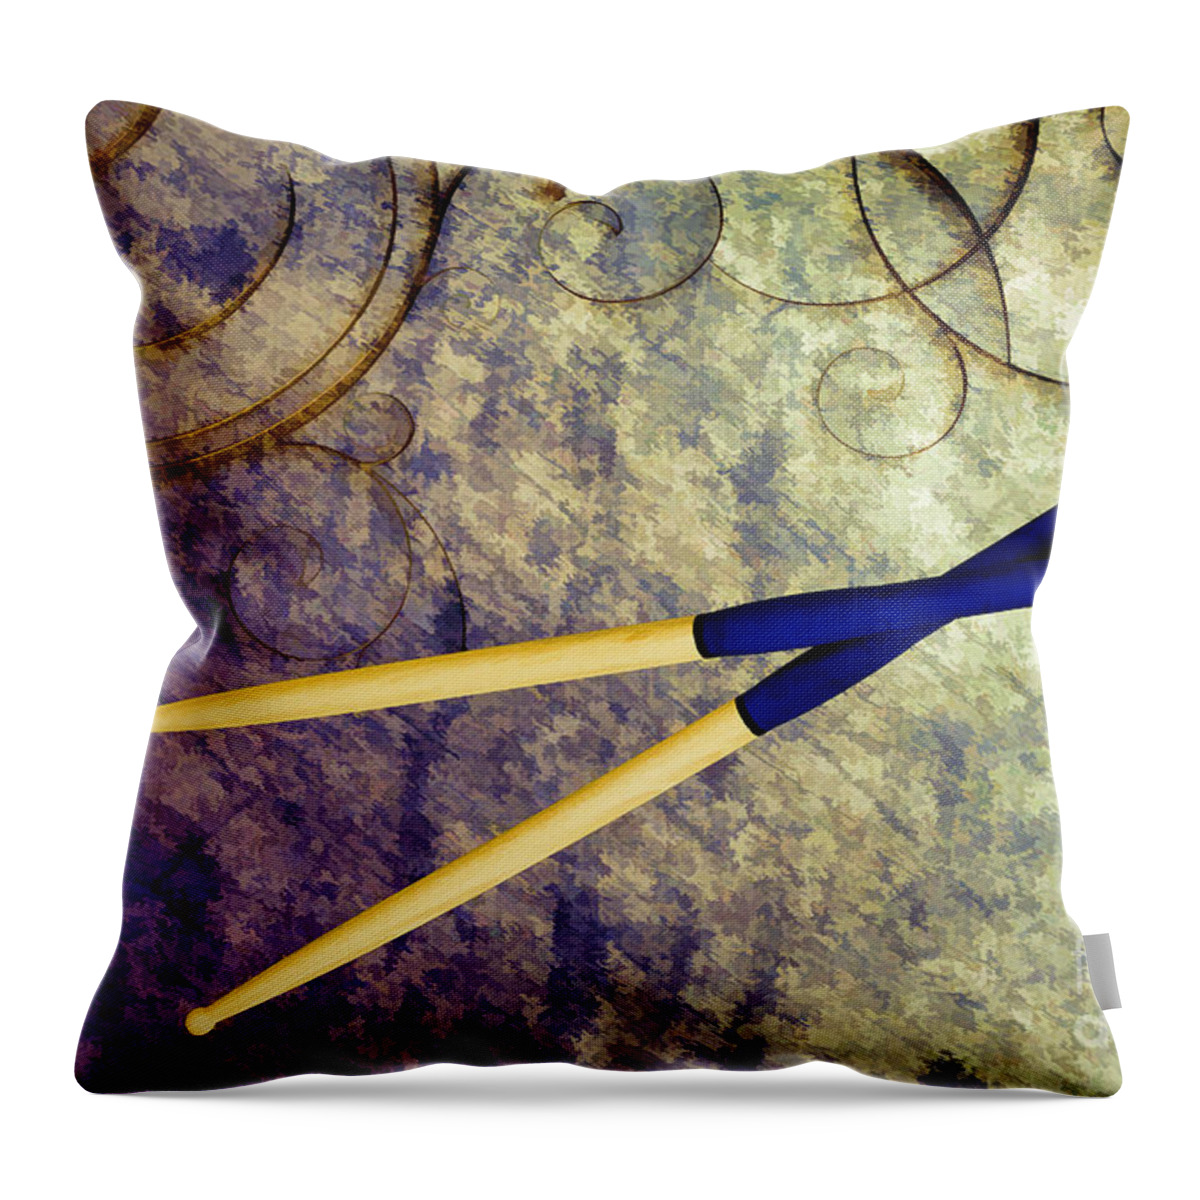 Drum Sticks Throw Pillow featuring the painting Drum Sticks for Jazz Set Drums Painting color 3245.02 by M K Miller